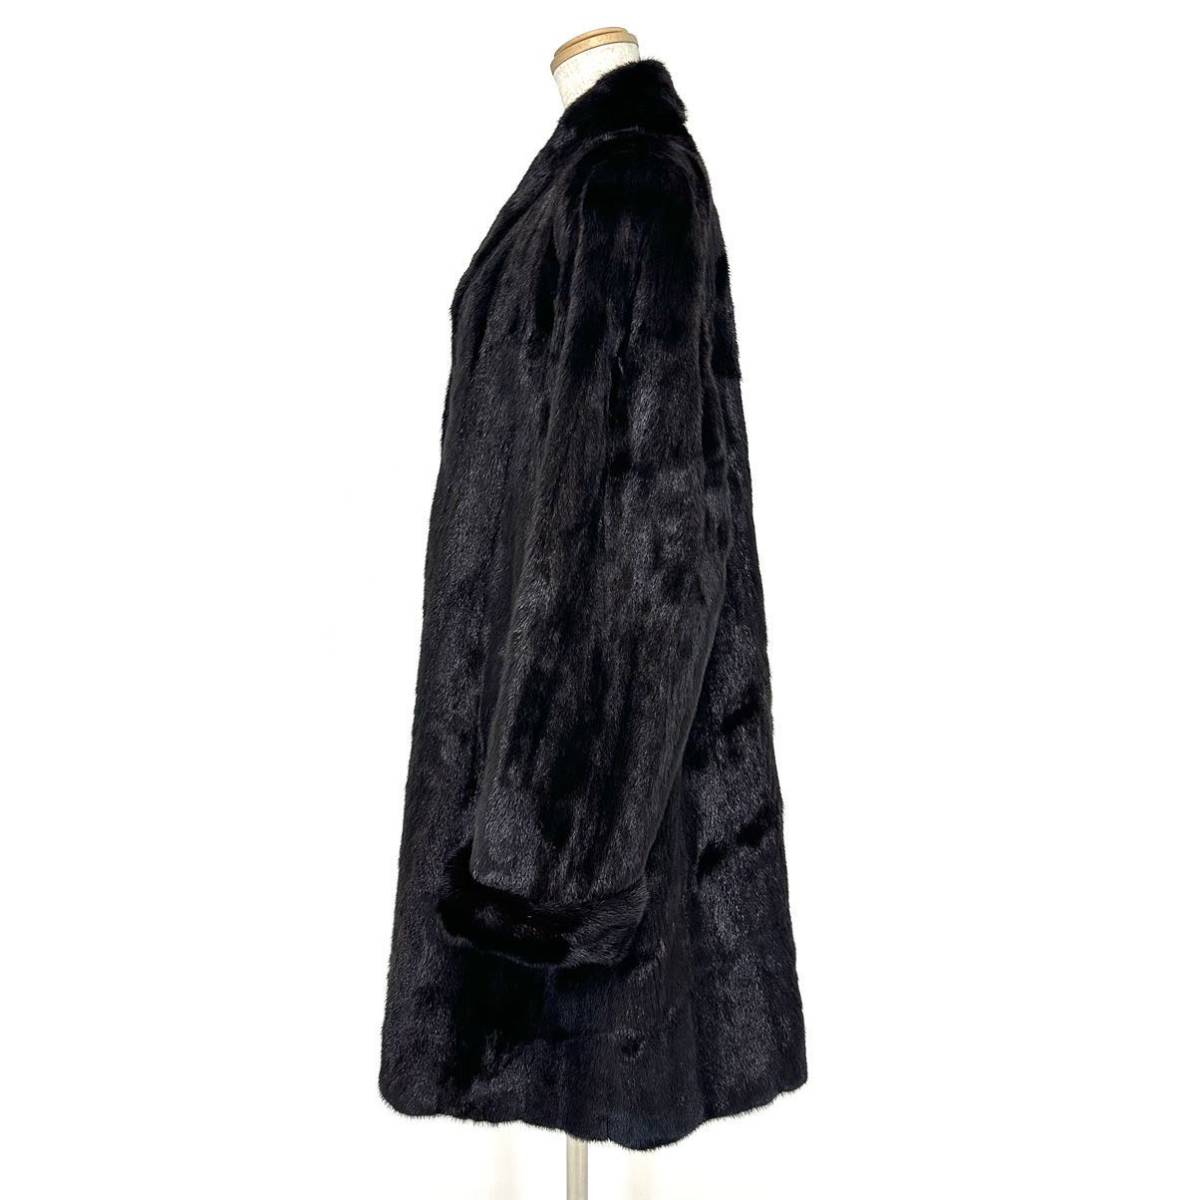 【貂商】h2156 BLACKGLAMA ブラックグラマミンク ハーフコート デザインコート セミロング ミンクコート 貂皮 mink身丈 約90cm_画像3